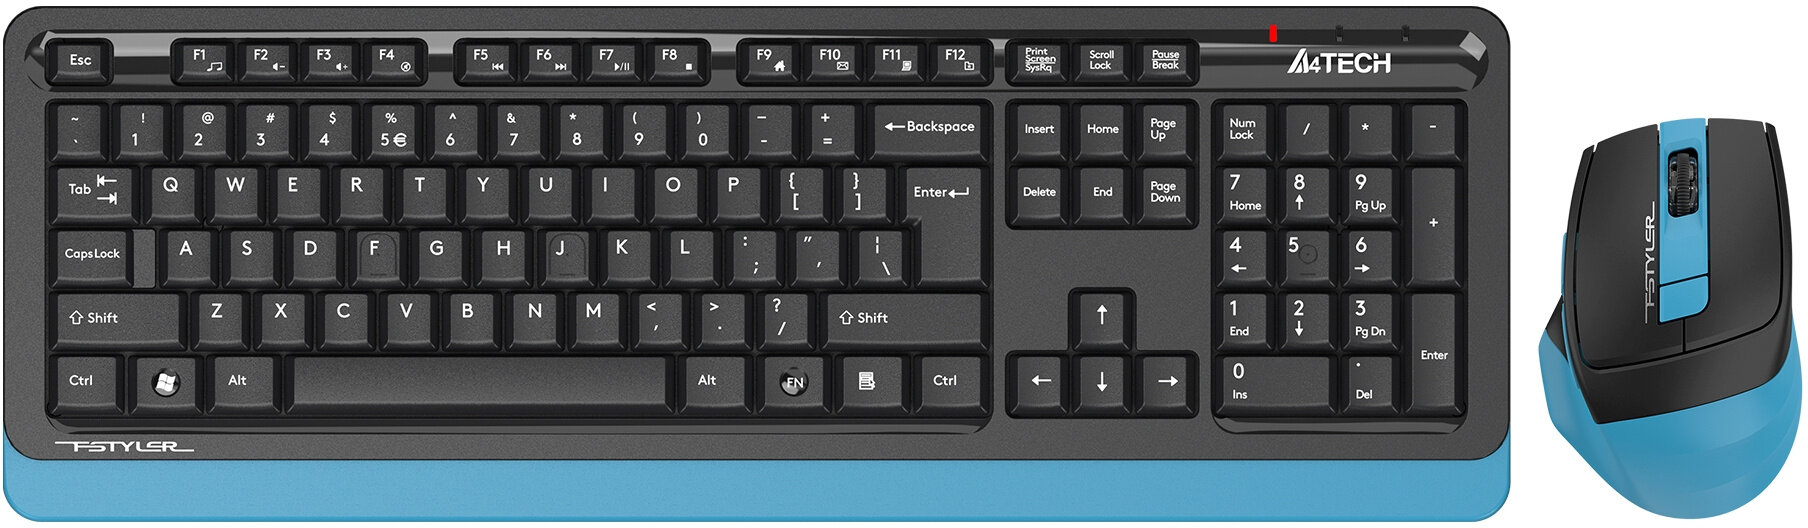 Клавиатура + мышь A4Tech Fstyler FG1035 клав: черный/синий мышь: черный/синий USB